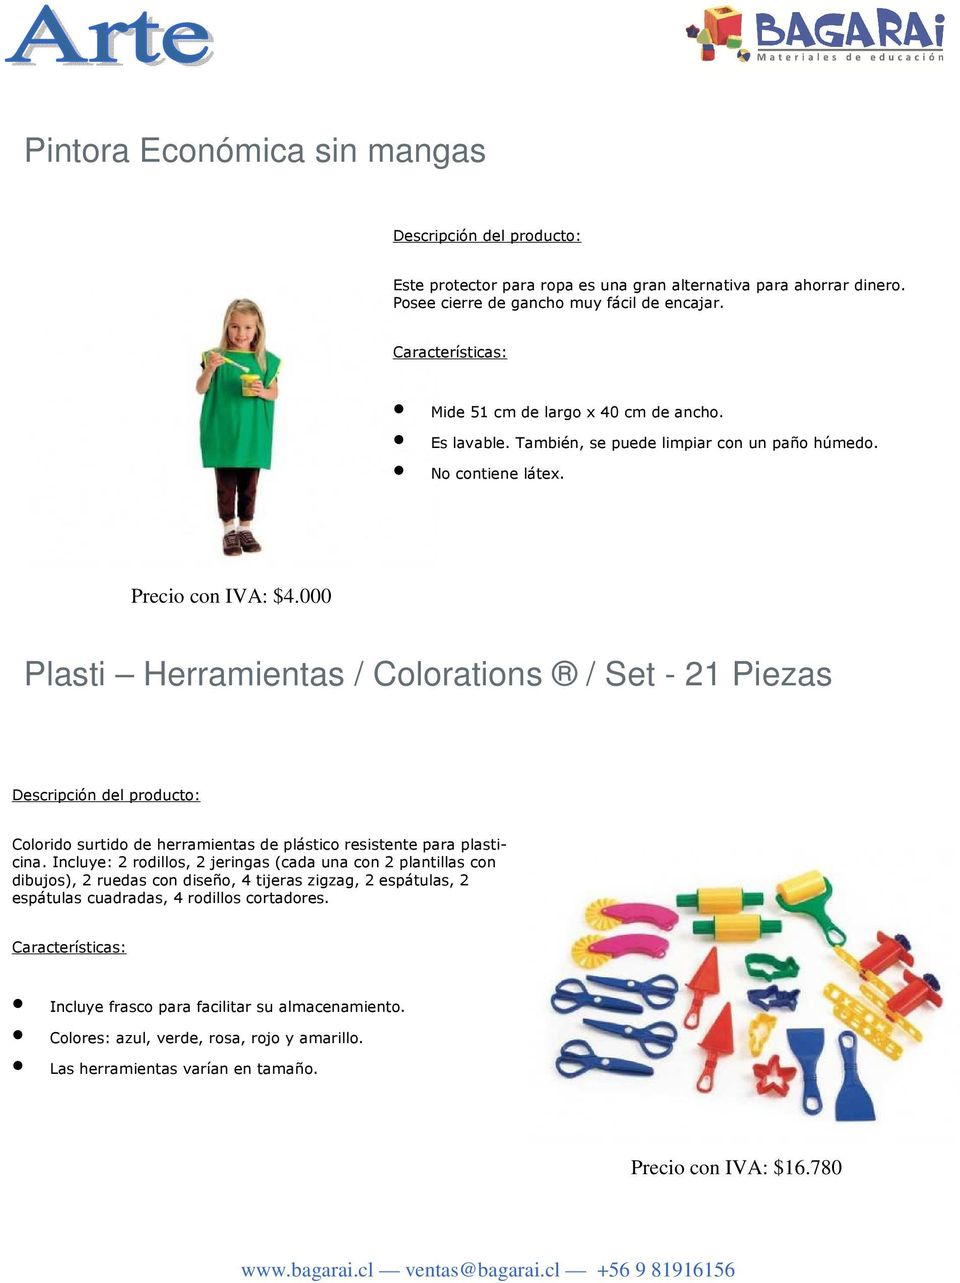 000 Plasti Herramientas / Colorations / Set - 21 Piezas Colorido surtido de herramientas de plástico resistente para plasticina.